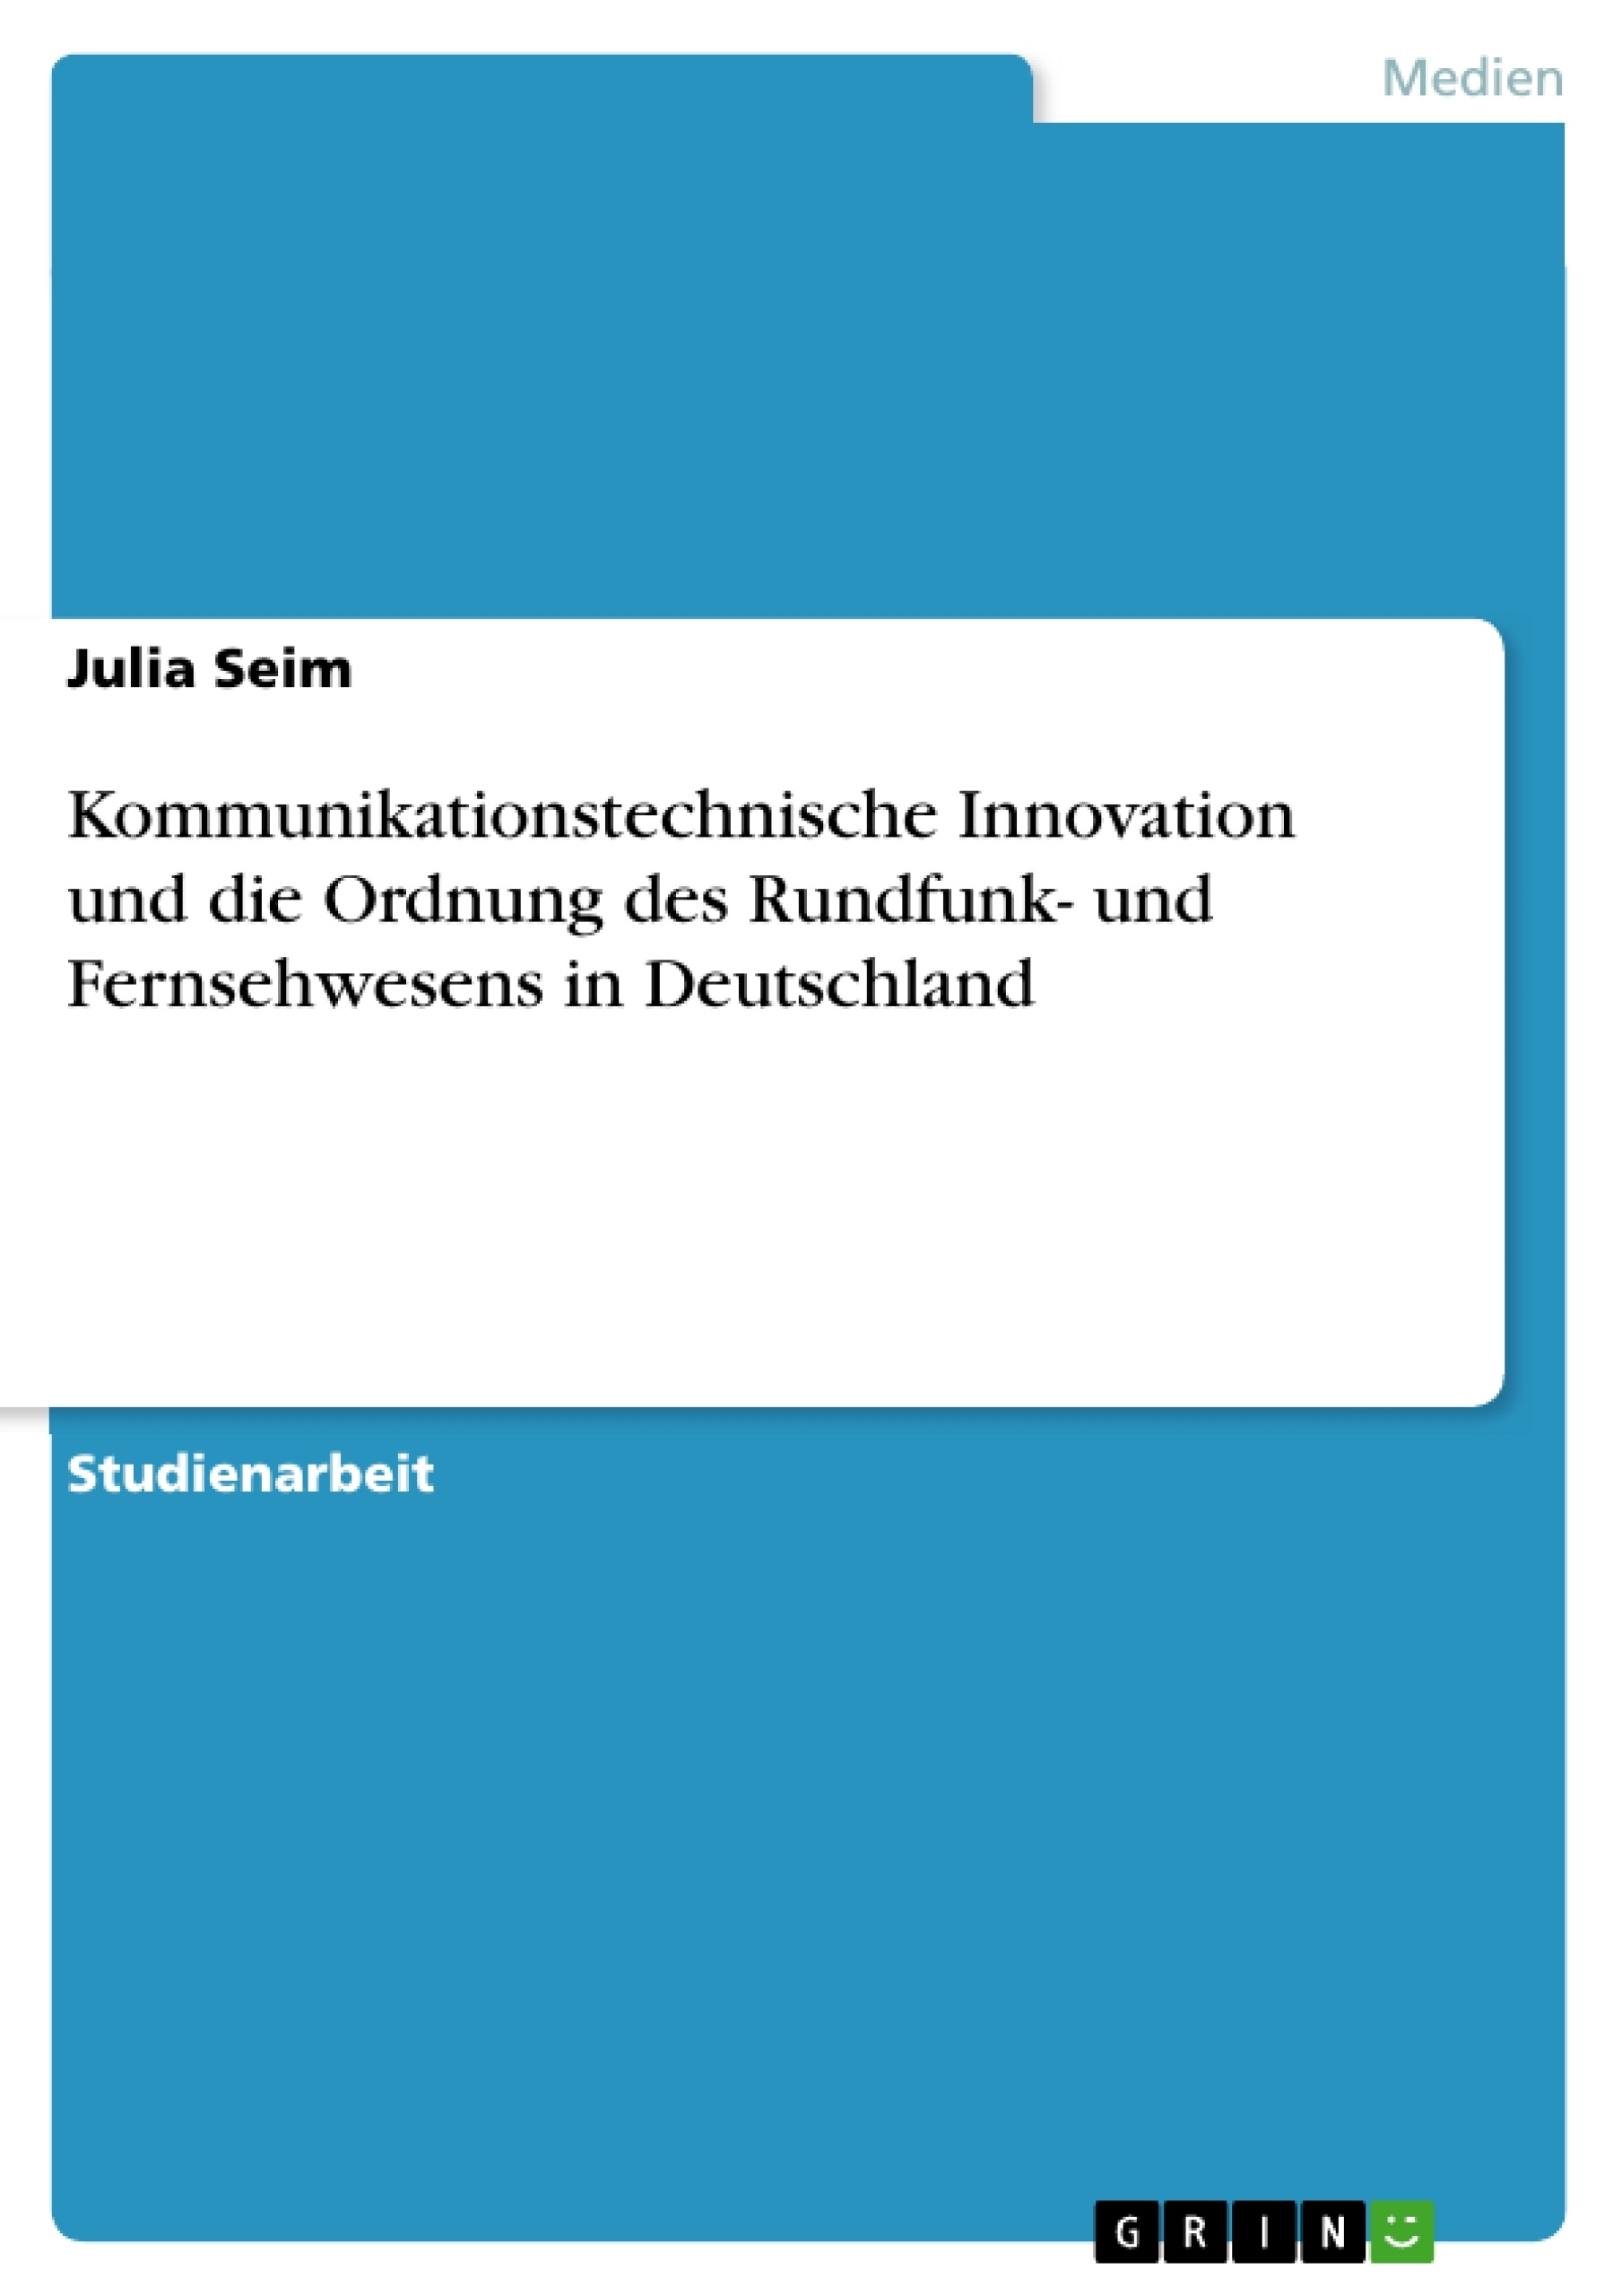 Título: Kommunikationstechnische Innovation und die Ordnung des Rundfunk- und Fernsehwesens in Deutschland